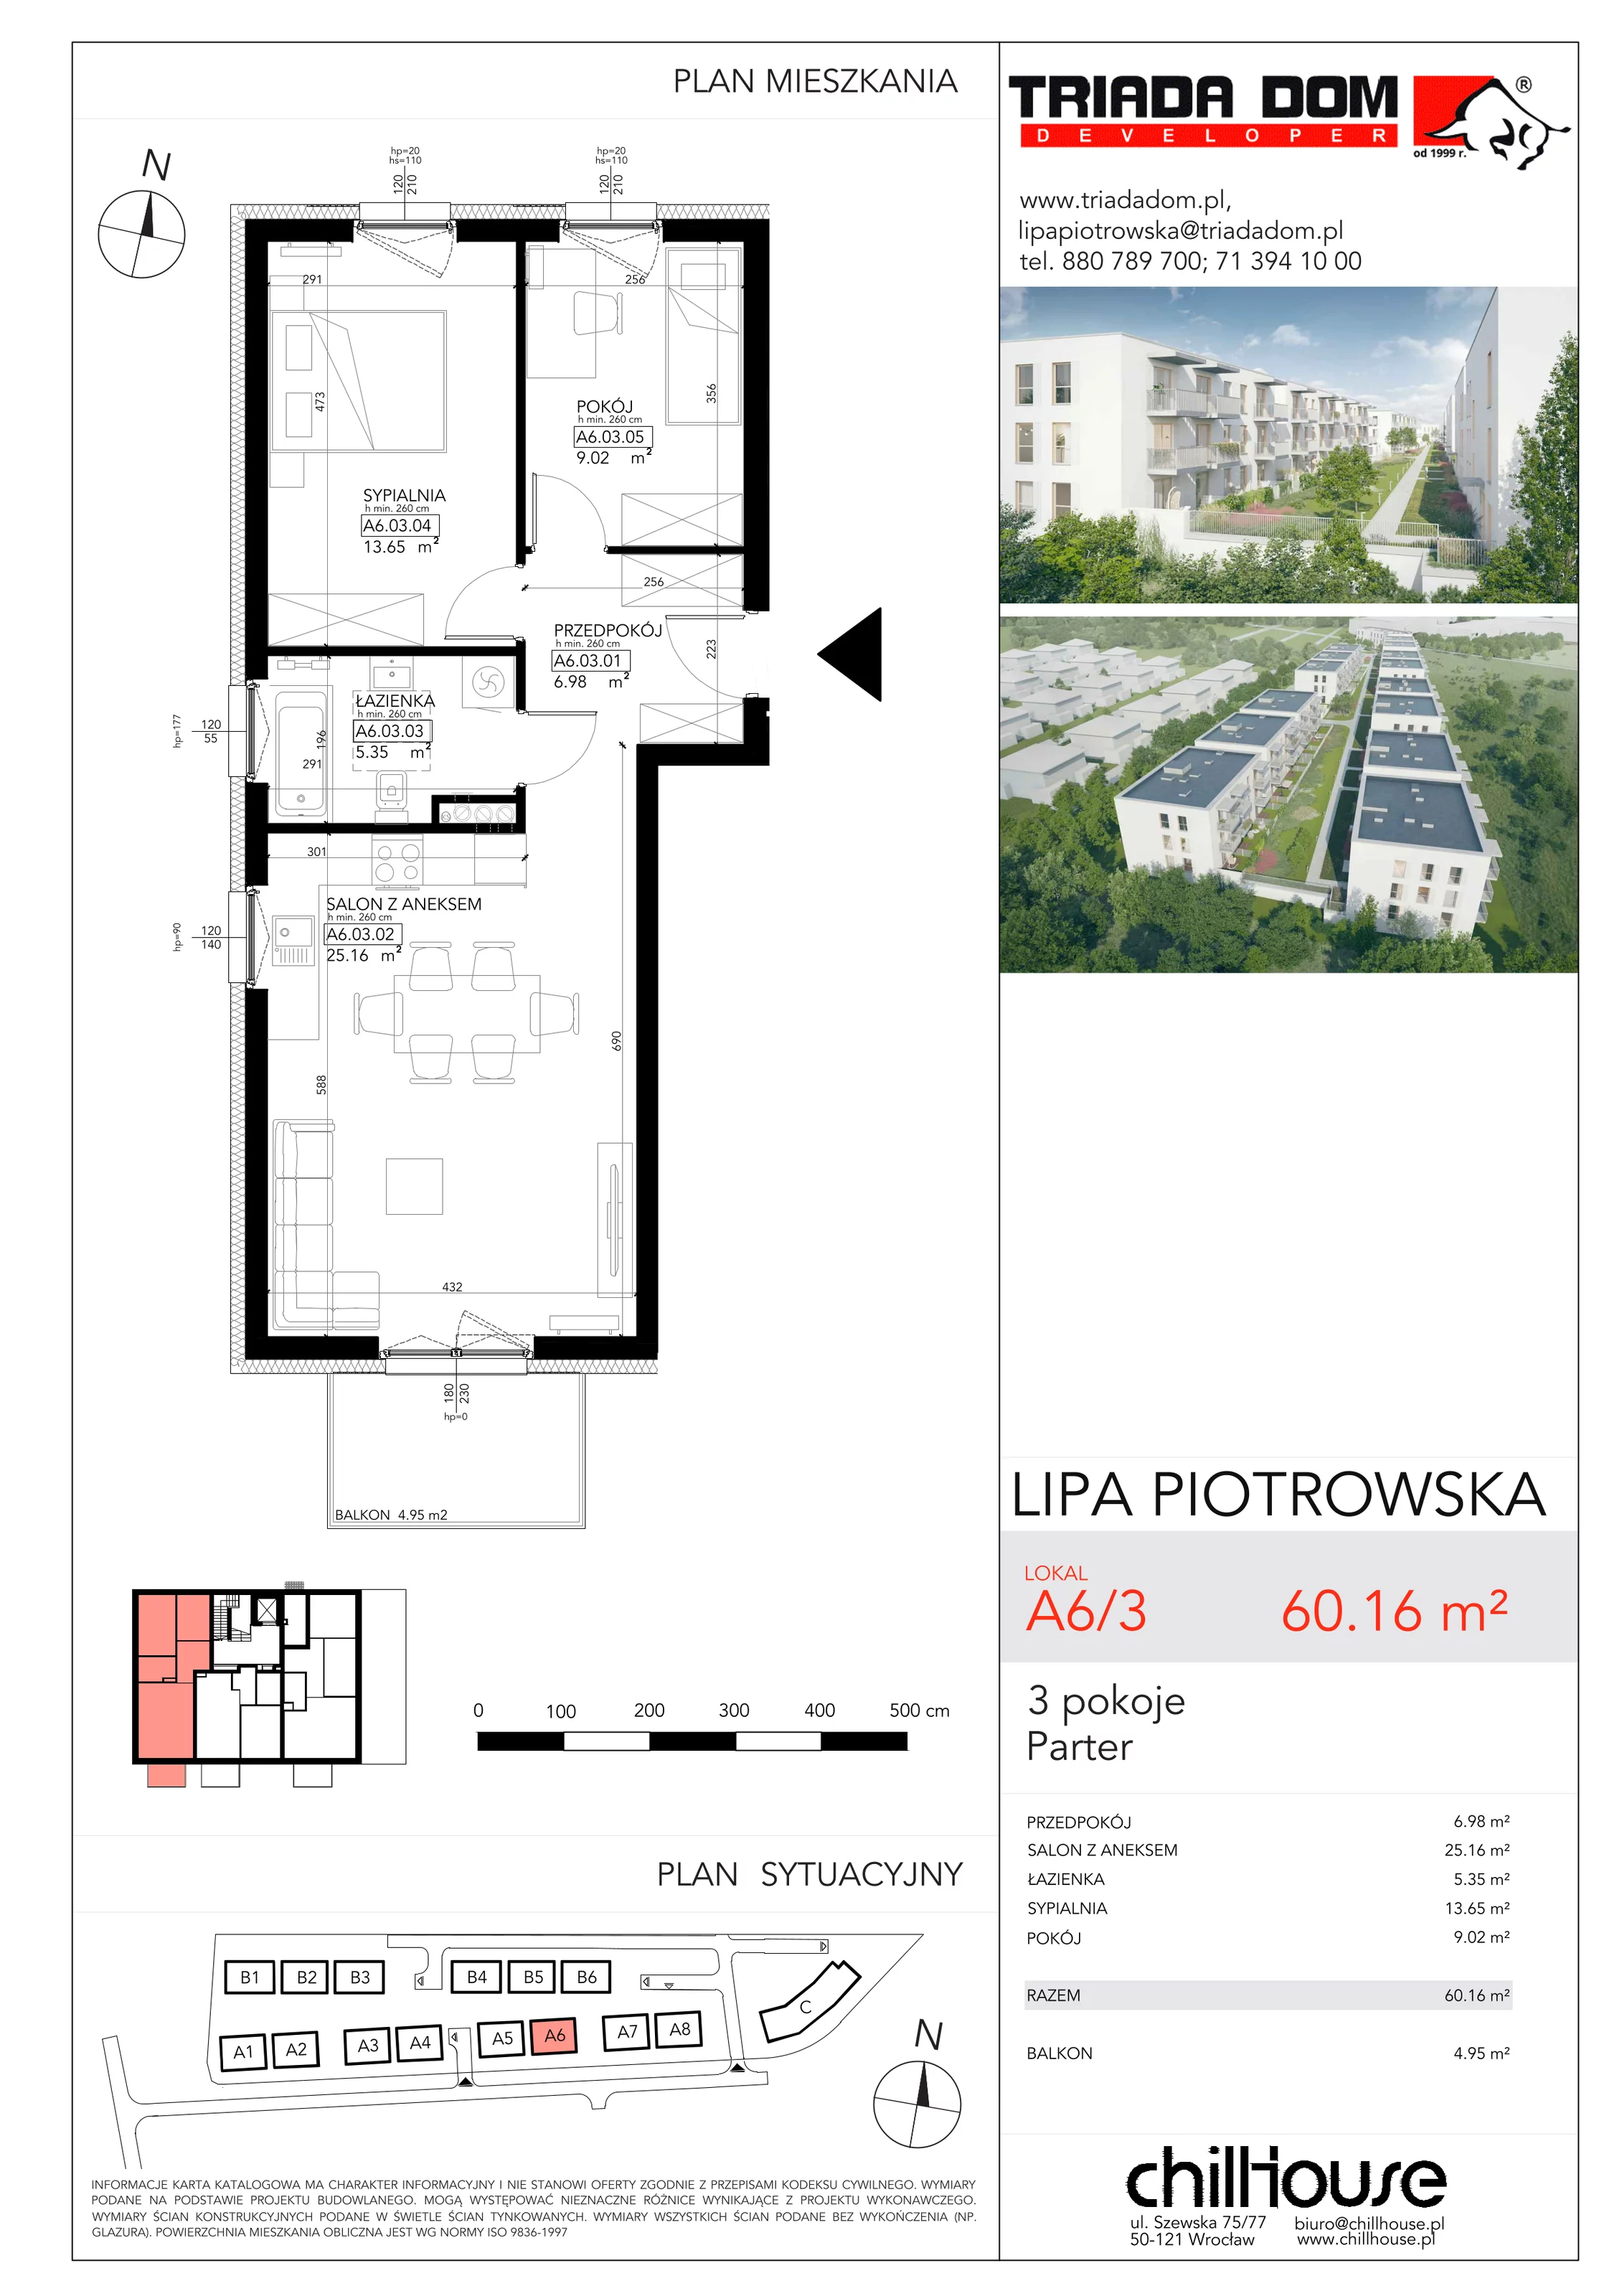 Mieszkanie 60,16 m², parter, oferta nr A63, Lipa Piotrowska, Wrocław, Lipa Piotrowska, ul. Lawendowa / Melisowa